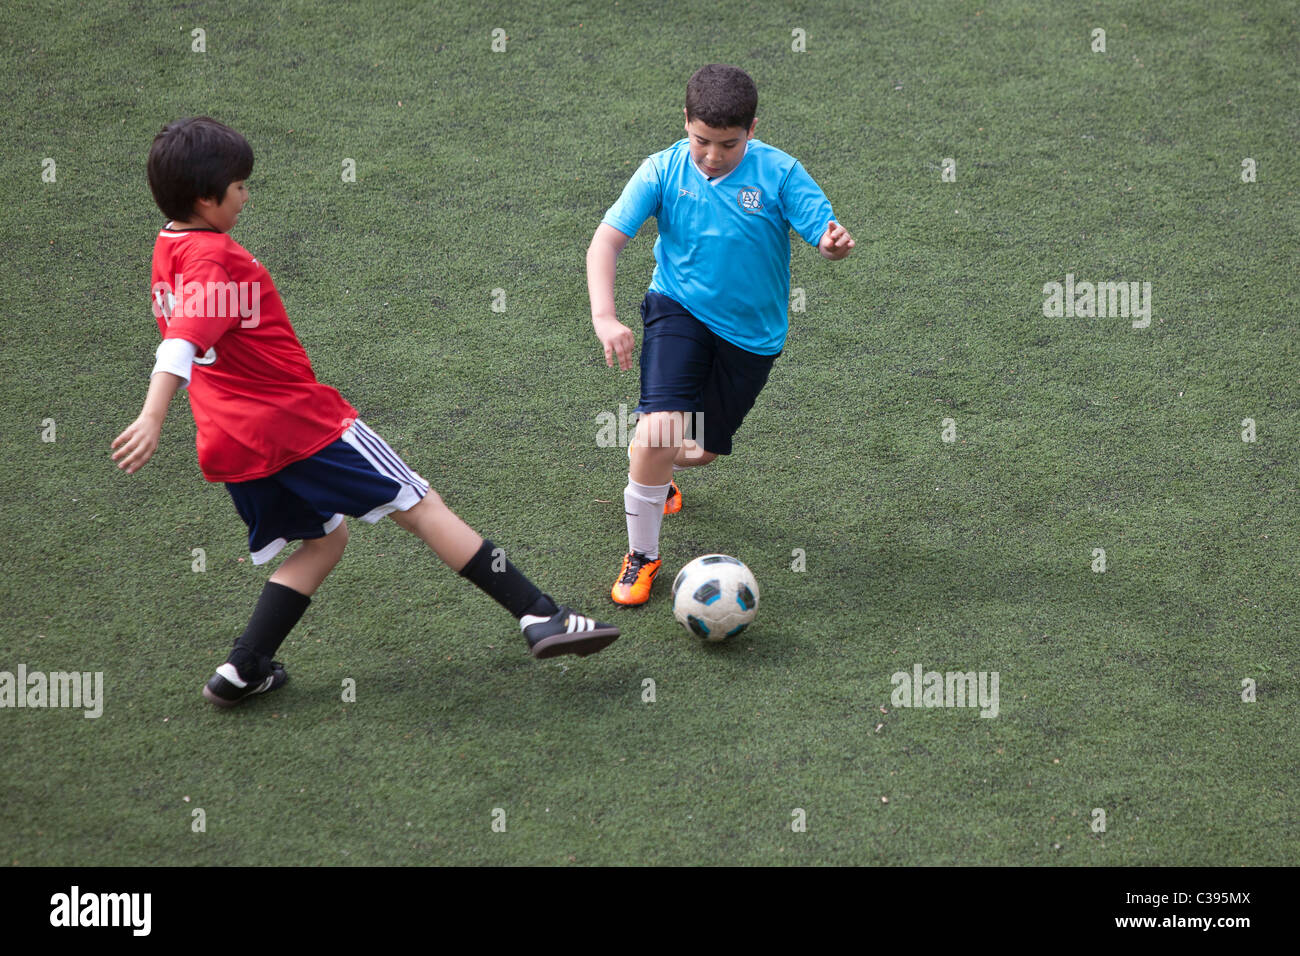 La acción del juego de fútbol del muchacho. Foto de stock